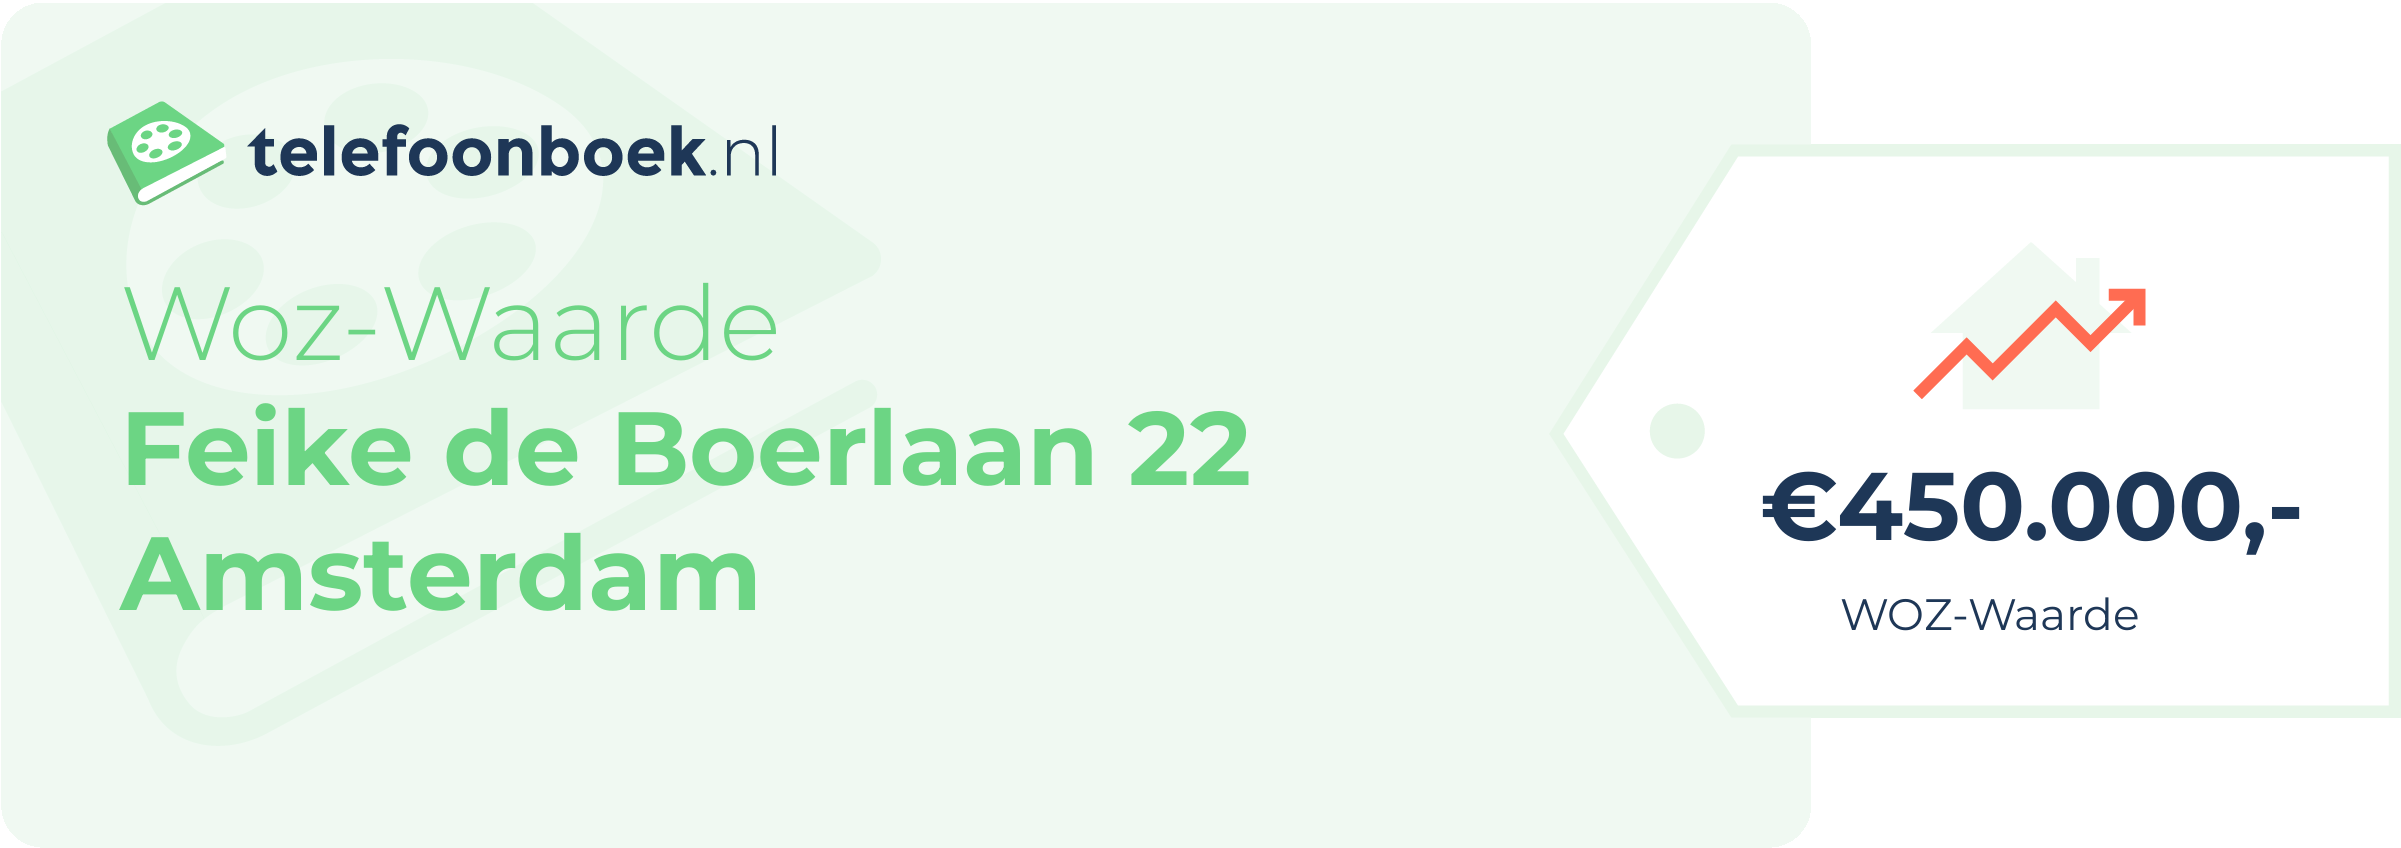 WOZ-waarde Feike De Boerlaan 22 Amsterdam